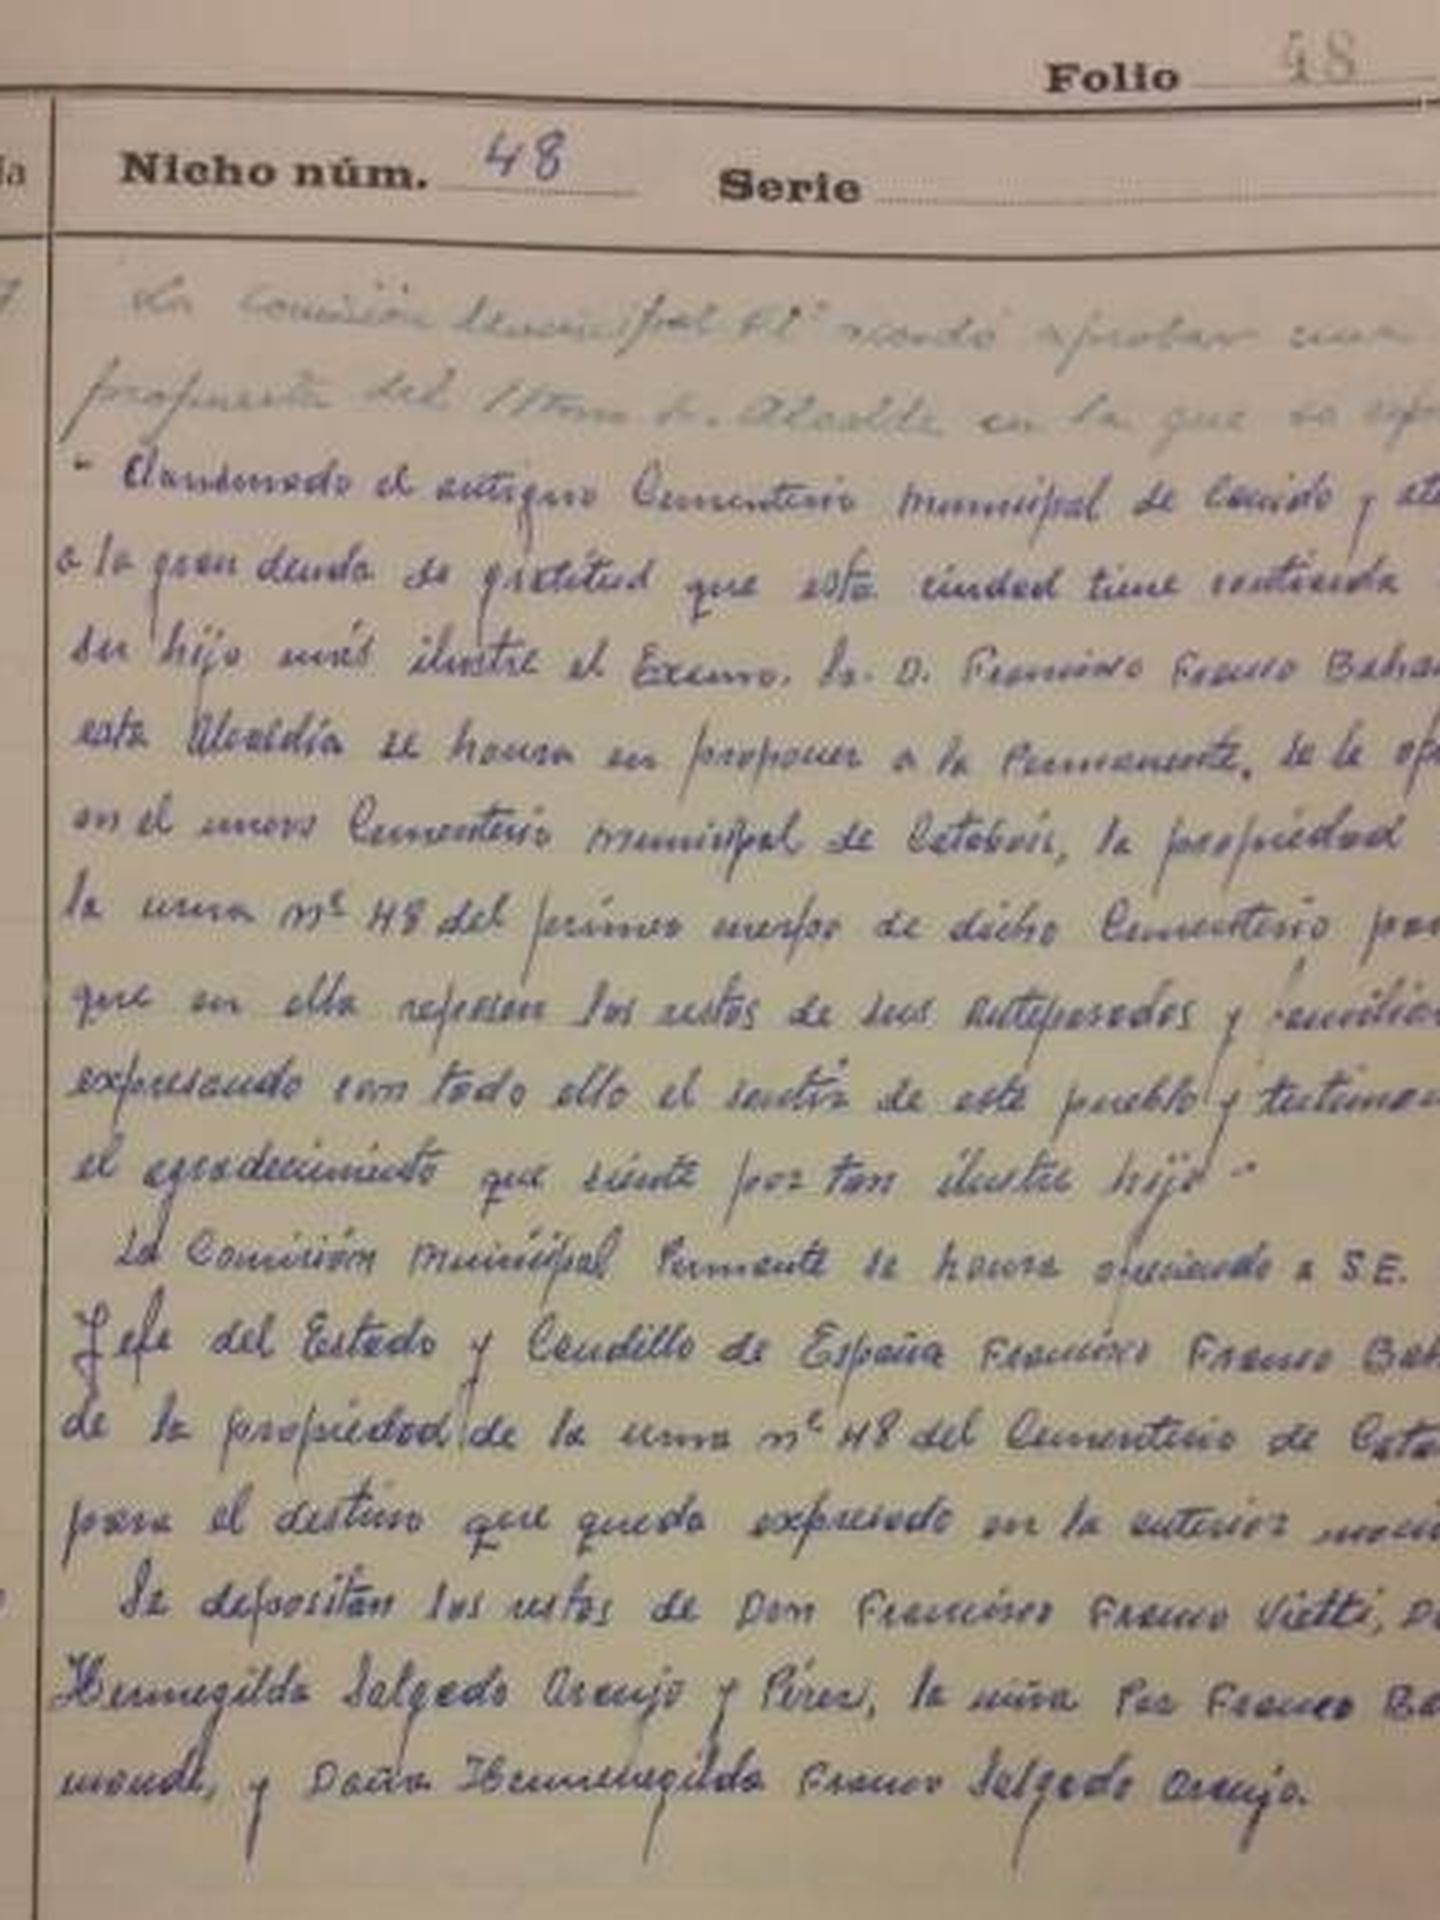 Pinche en la imagen para leer el documento de 1967 por el que se regala el nicho a Francisco Franco.